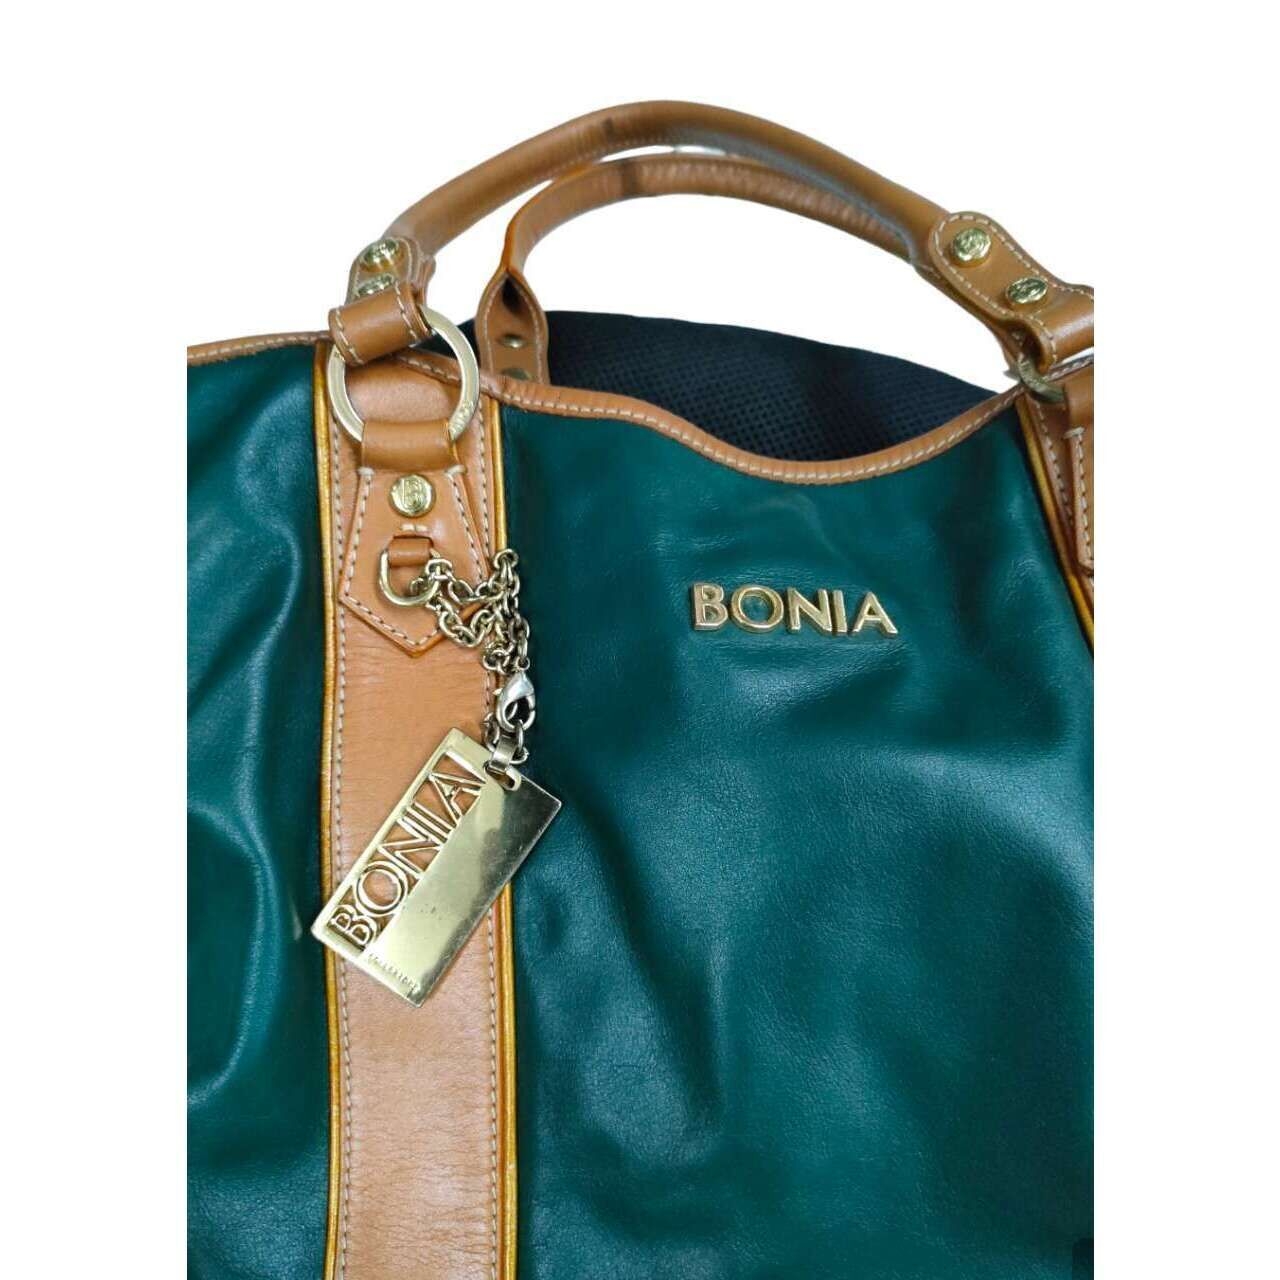 Bonia Brown & Teal Tote Bag